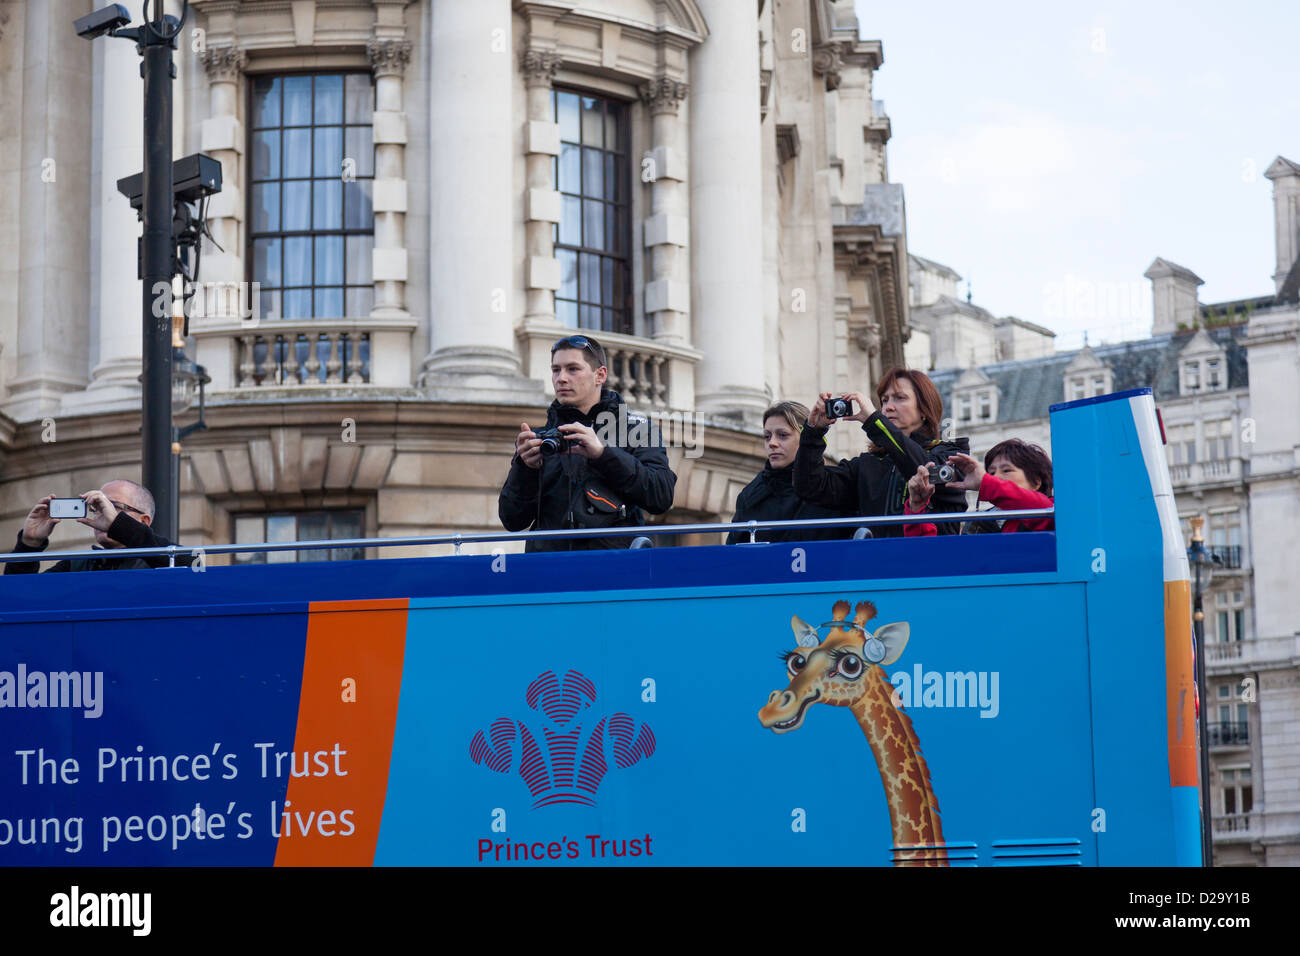 Les touristes sur le pont supérieur d'un double decker bus touristique de prendre des photos alors qu'ils se déplacent à travers Londres. Banque D'Images